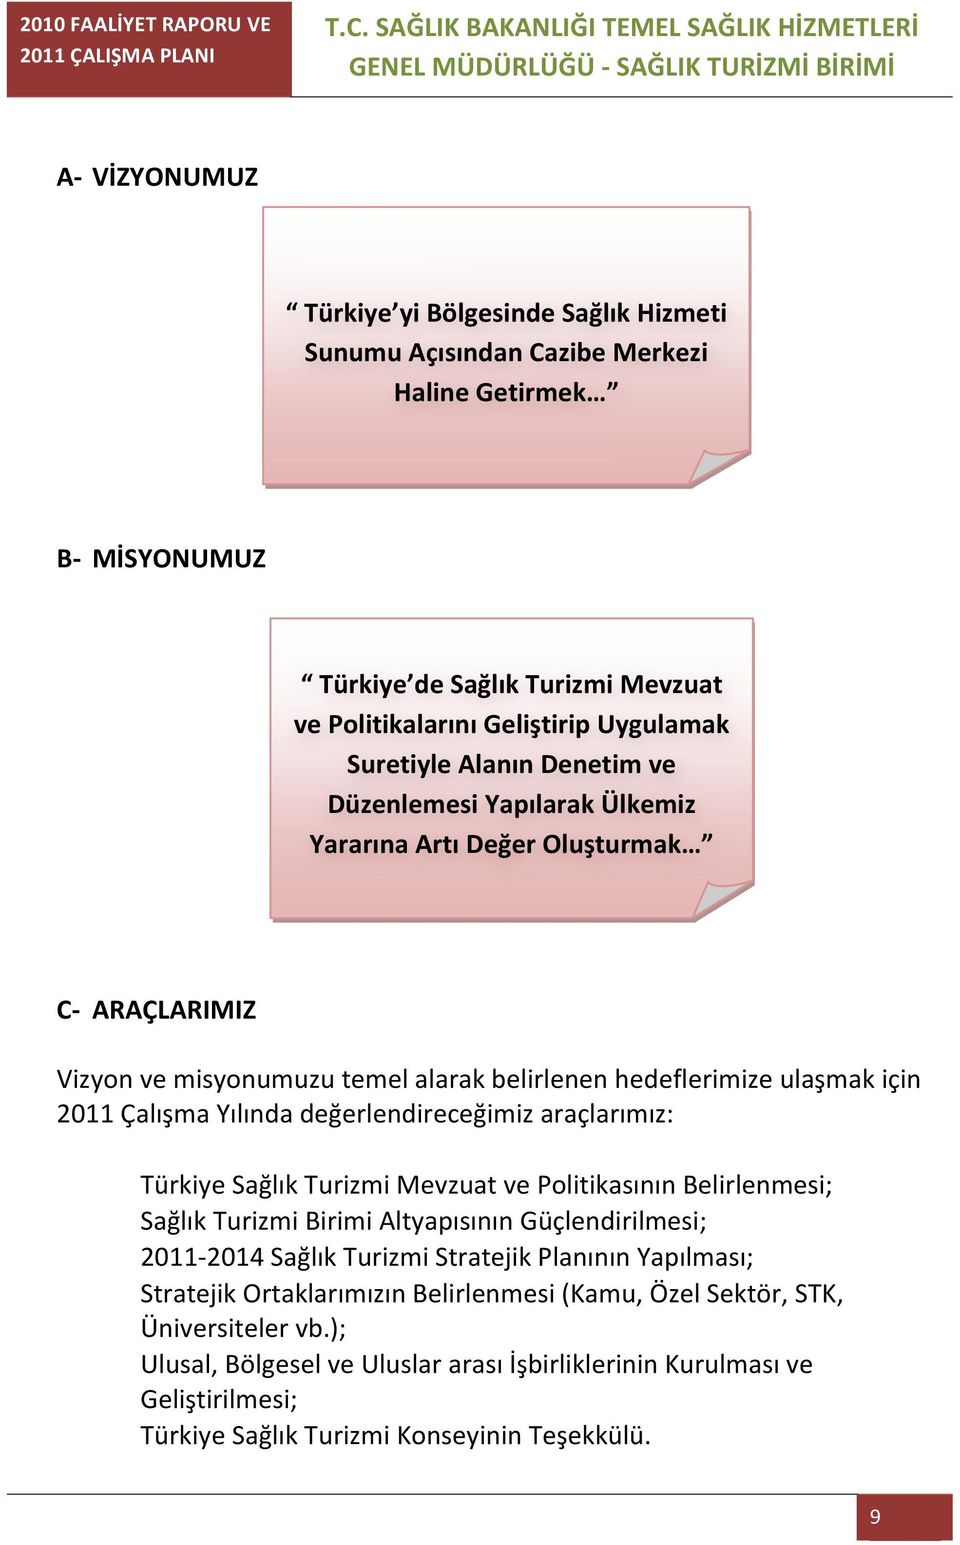 değerlendireceğimiz araçlarımız: Türkiye Sağlık Turizmi Mevzuat ve Politikasının Belirlenmesi; Sağlık Turizmi Birimi Altyapısının Güçlendirilmesi; 2011-2014 Sağlık Turizmi Stratejik Planının